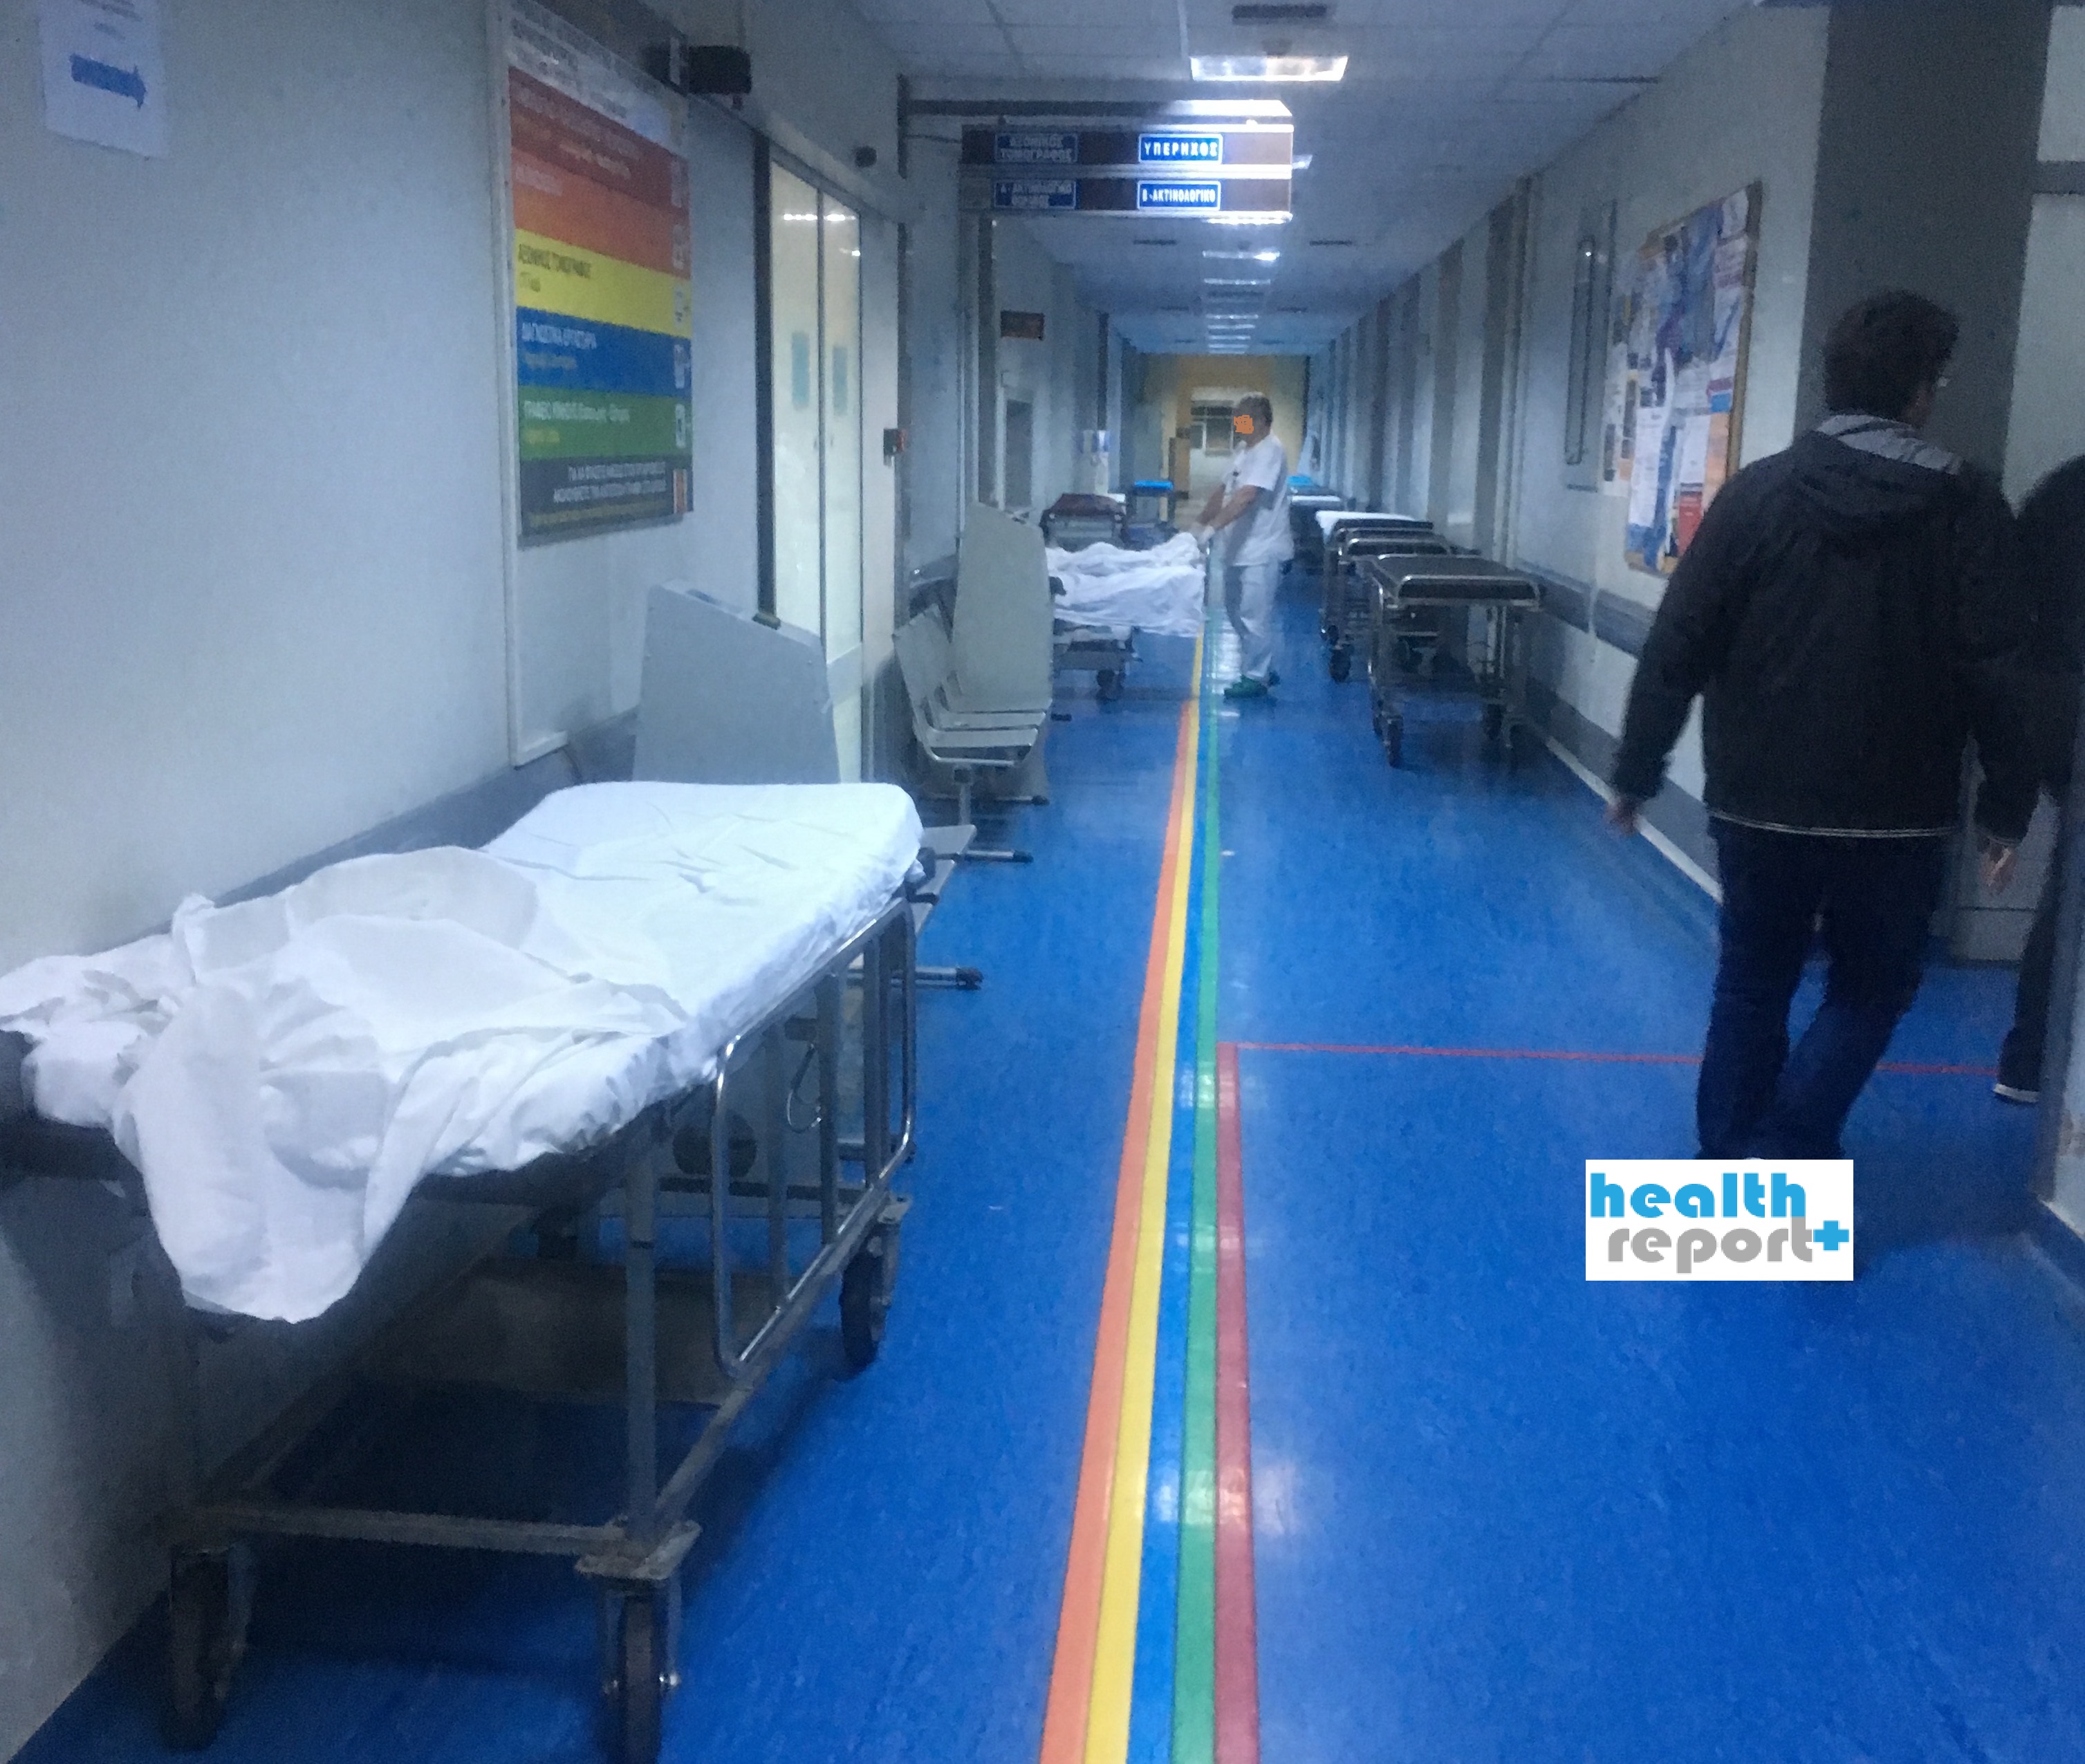 Εικόνες σοκ και πάλι στο Αττικόν! Ασθενείς διασωληνωμένοι στους διαδρόμους του νοσοκομείου (φωτο)